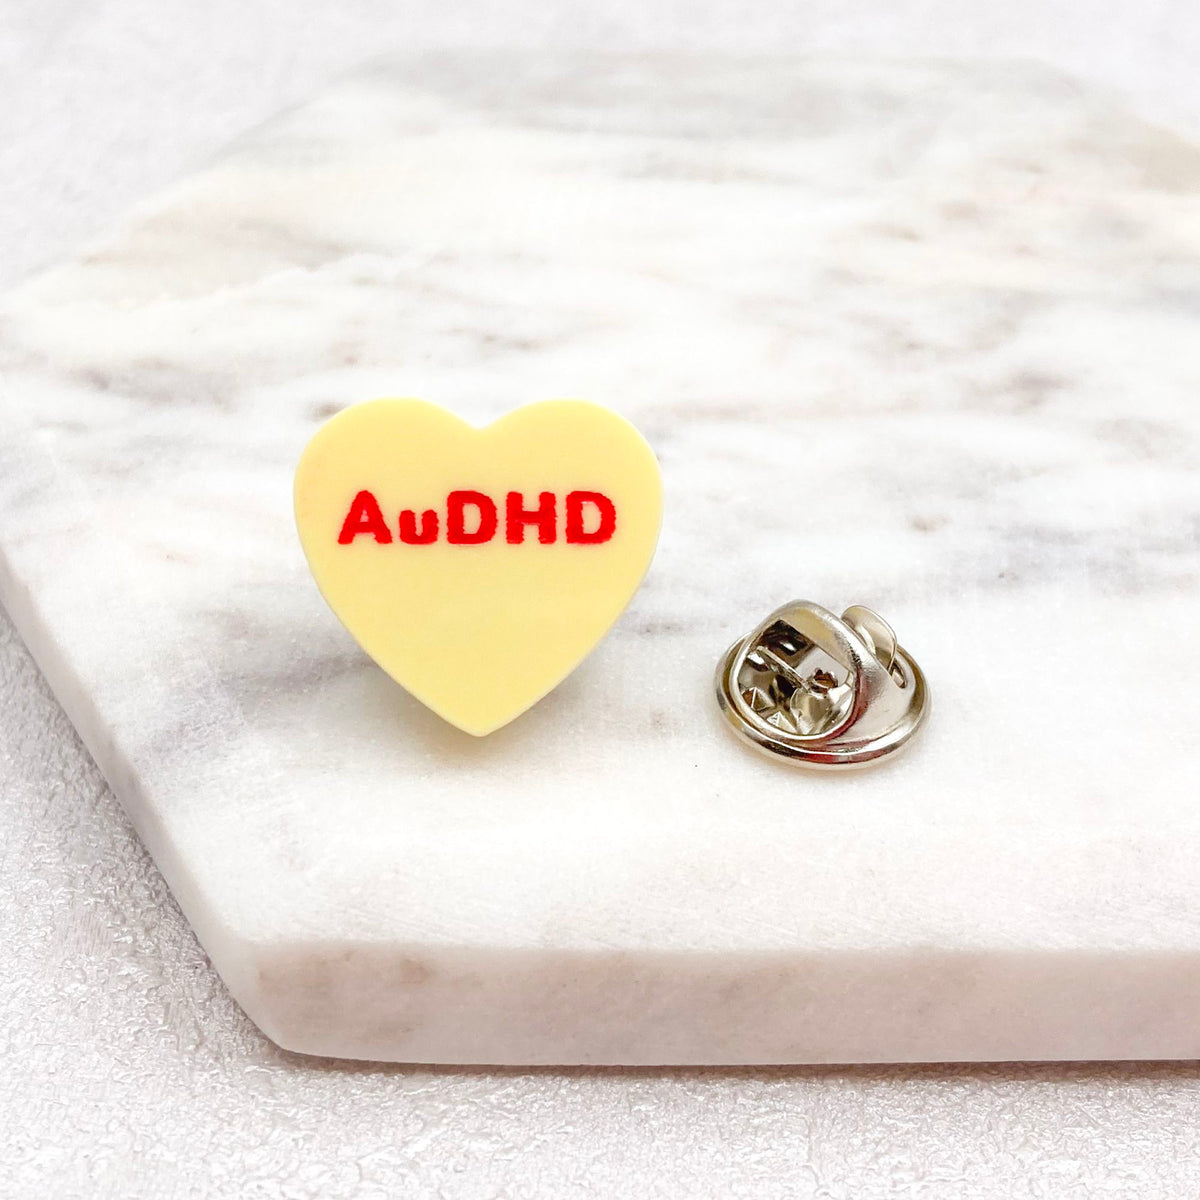 audhd awareness pin handmade gift